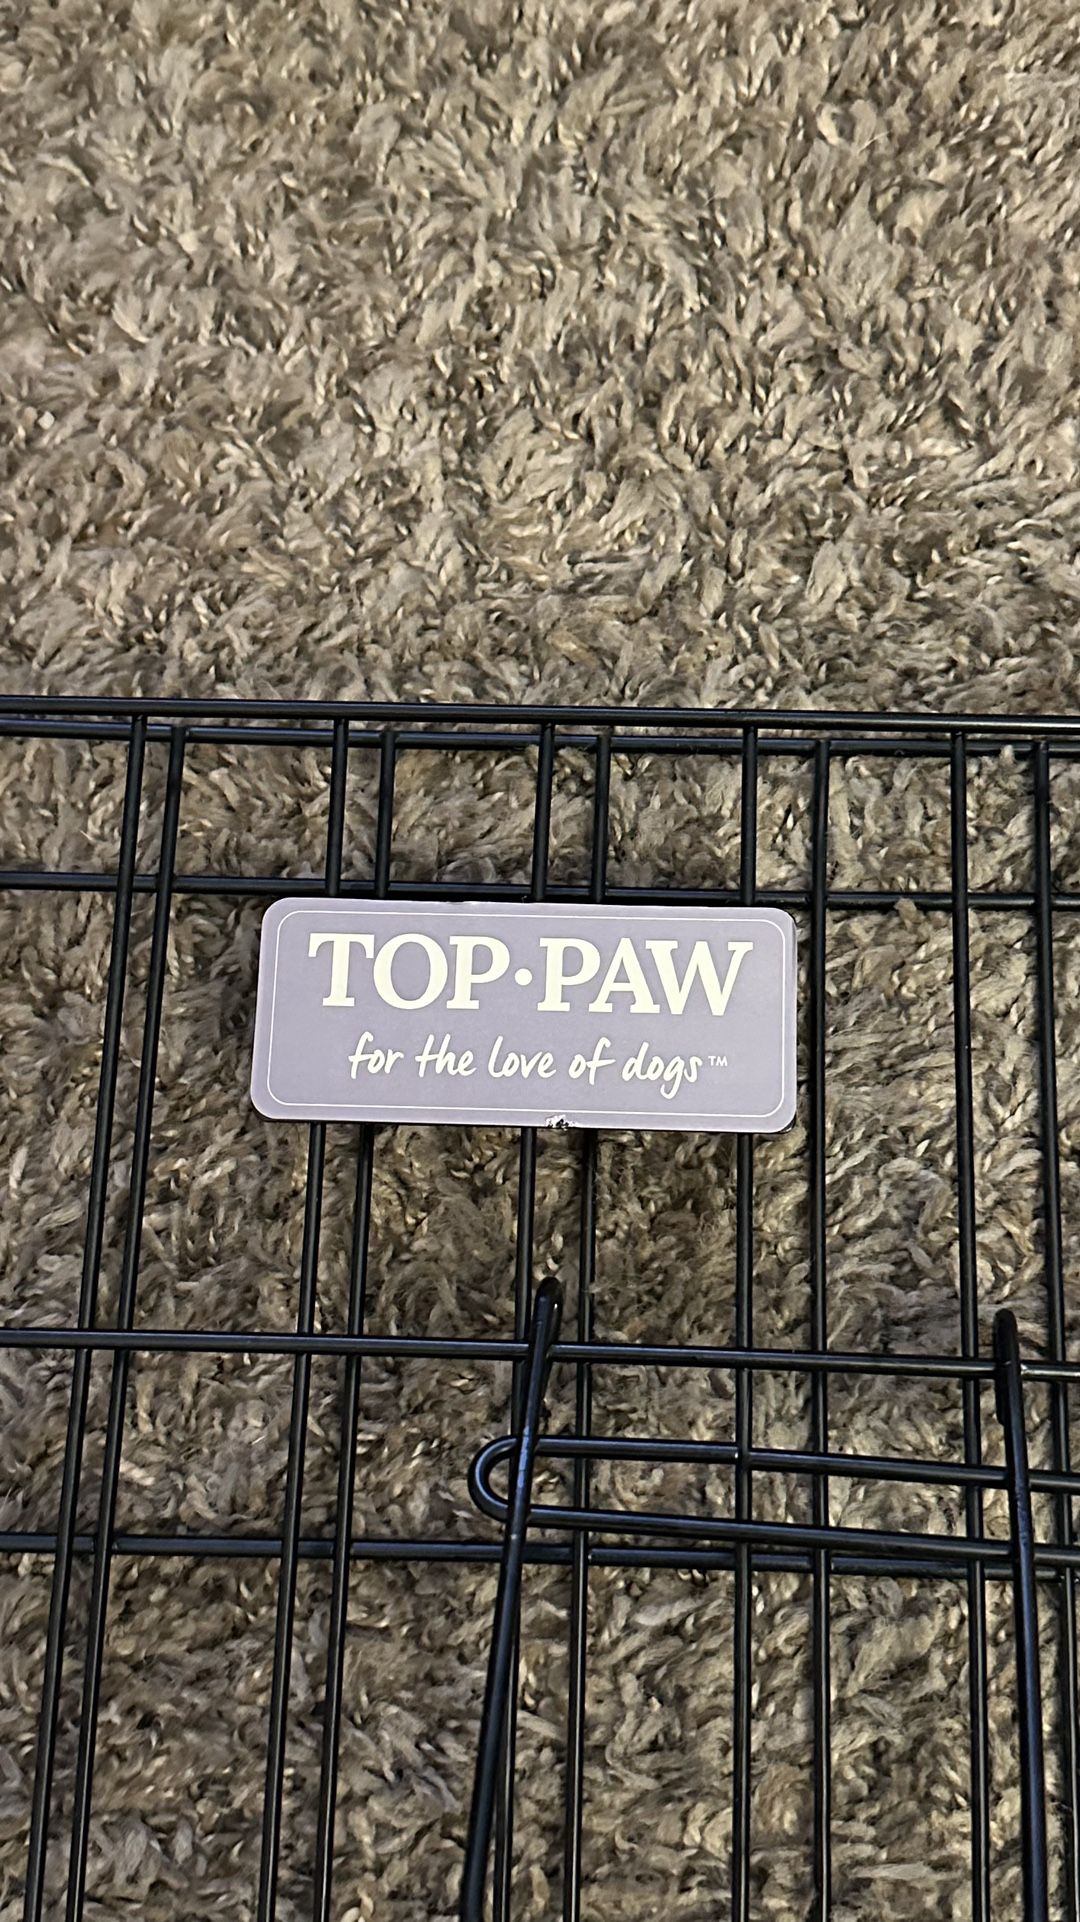 Top-paw Dog Playpen  Large